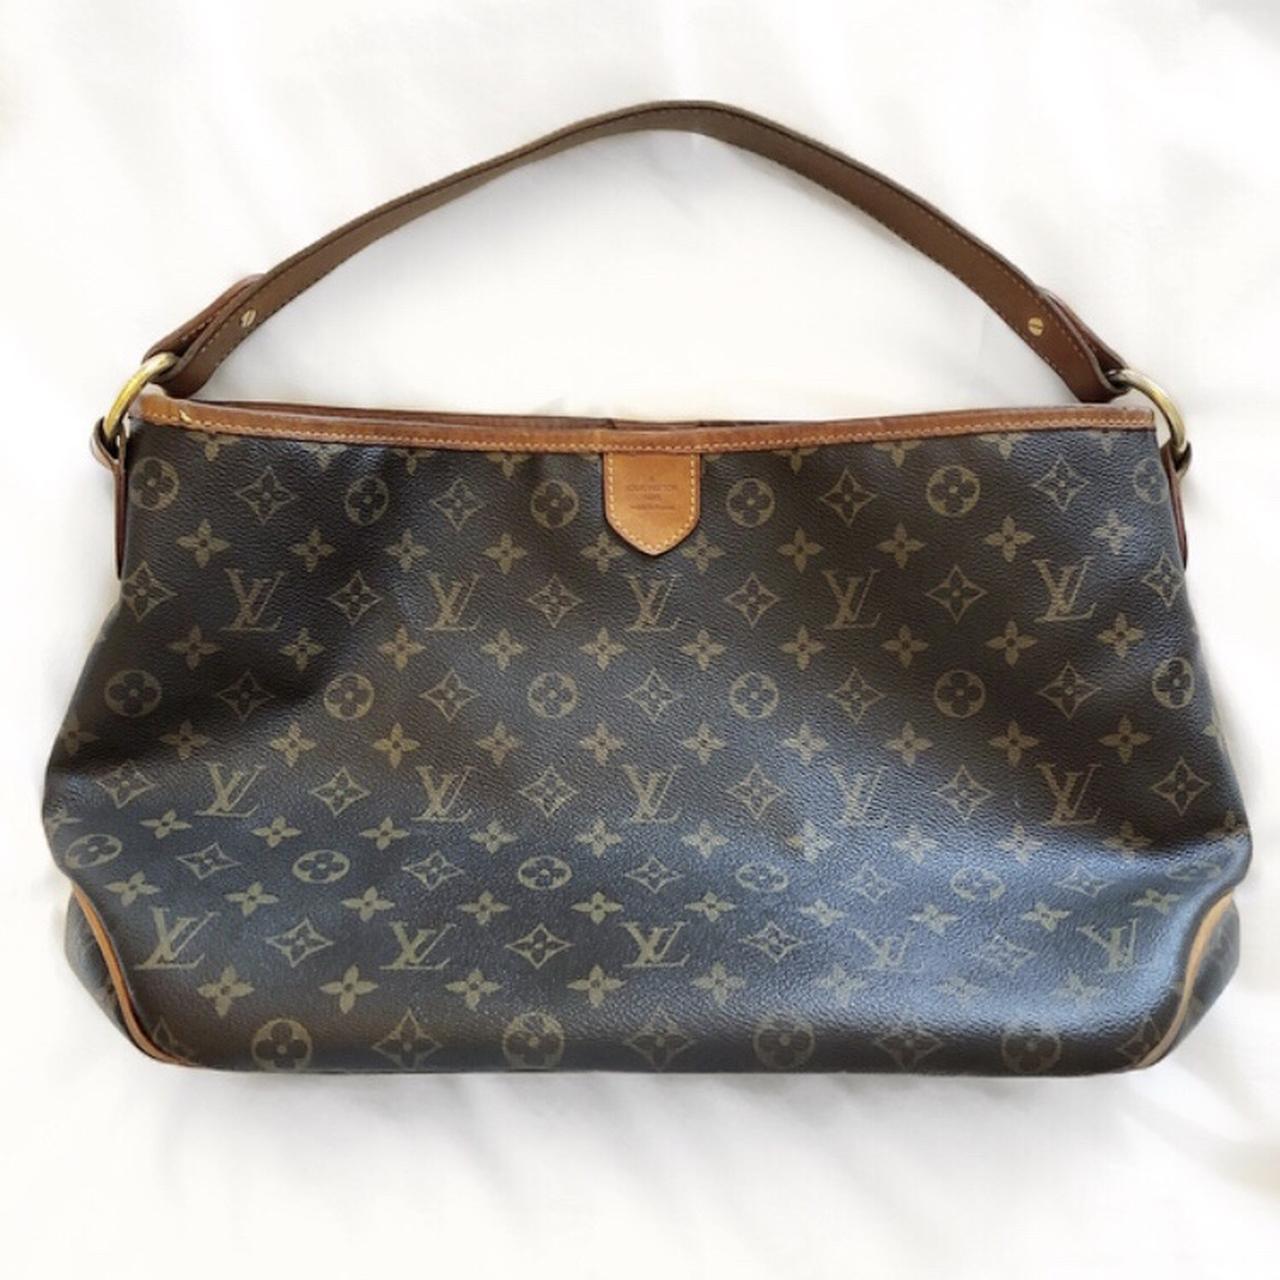 Vintage Louis Vuitton Pochette Bag with LV - Depop